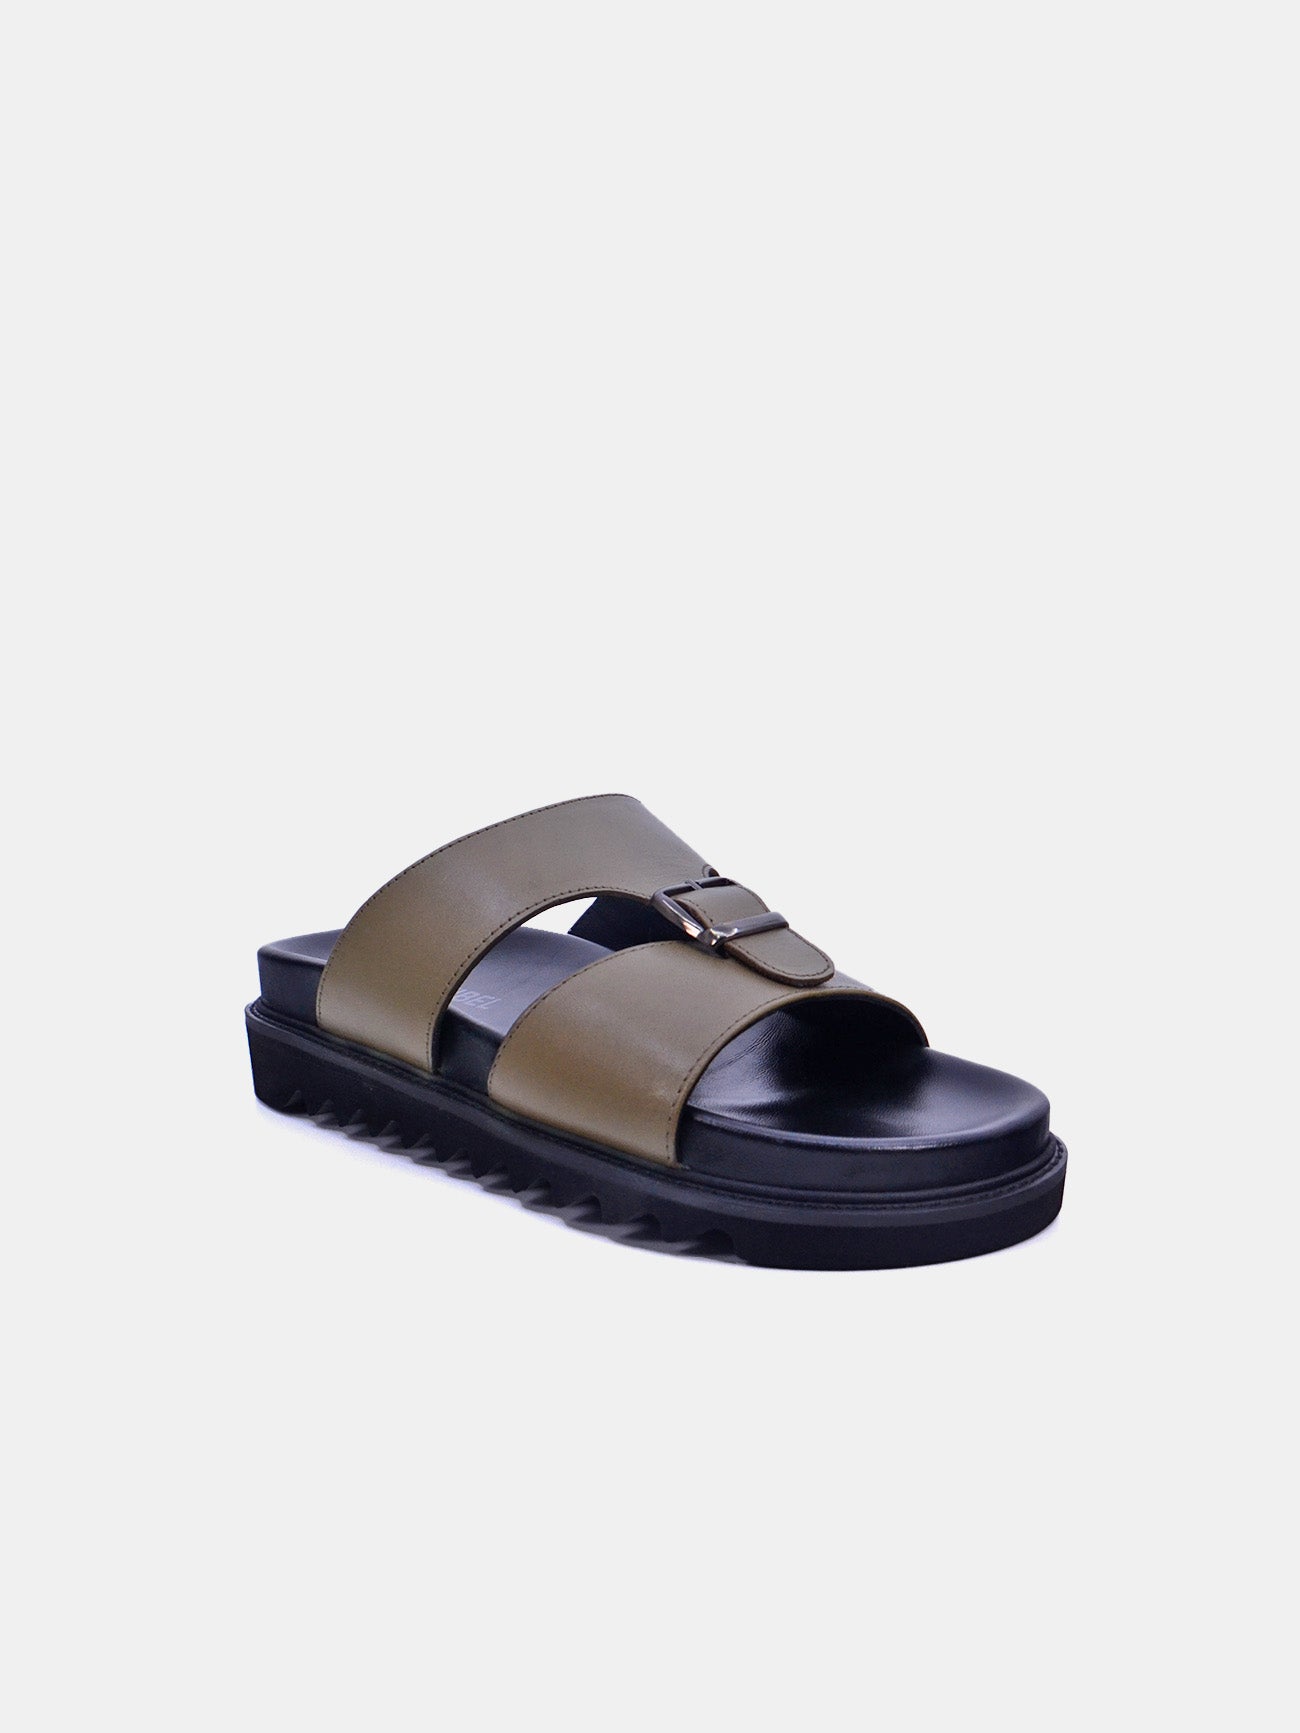 Josef Seibel 58403 Men's Casual Sandals #color_Beige